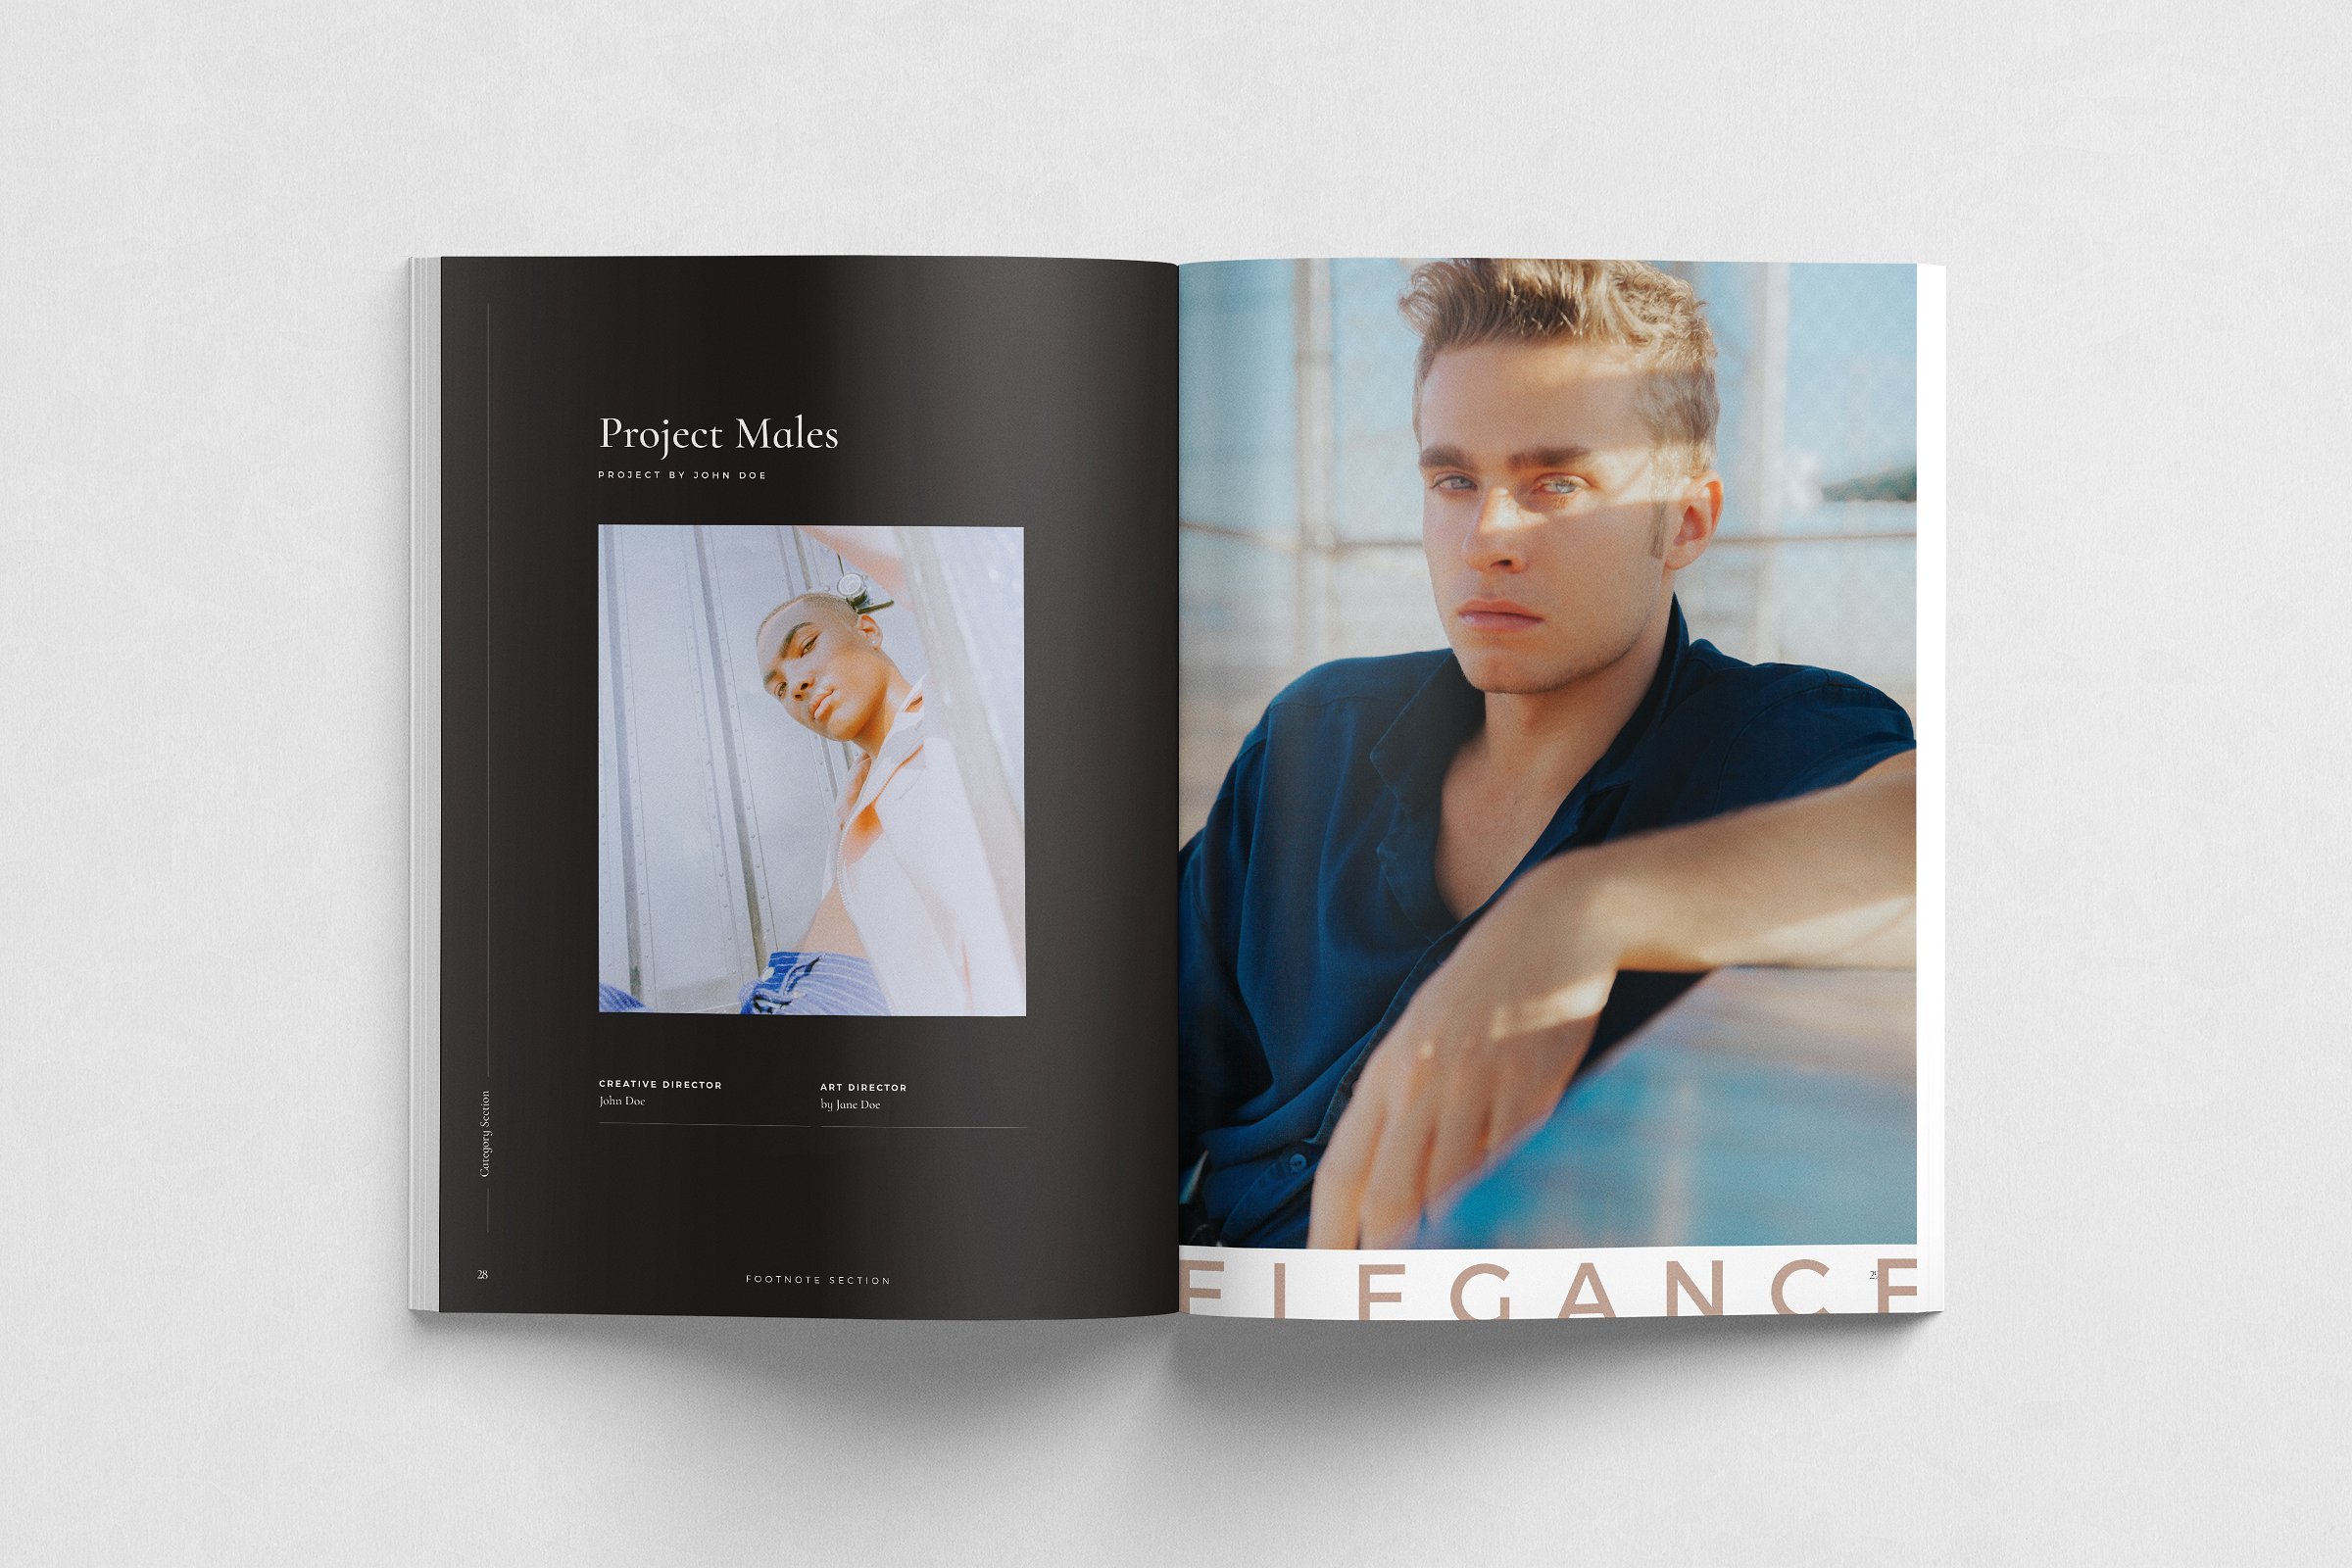 现代简约的服装品牌摄影宣传册模板 Modern Minimalist Clothing Brand Photography Brochure Template插图3